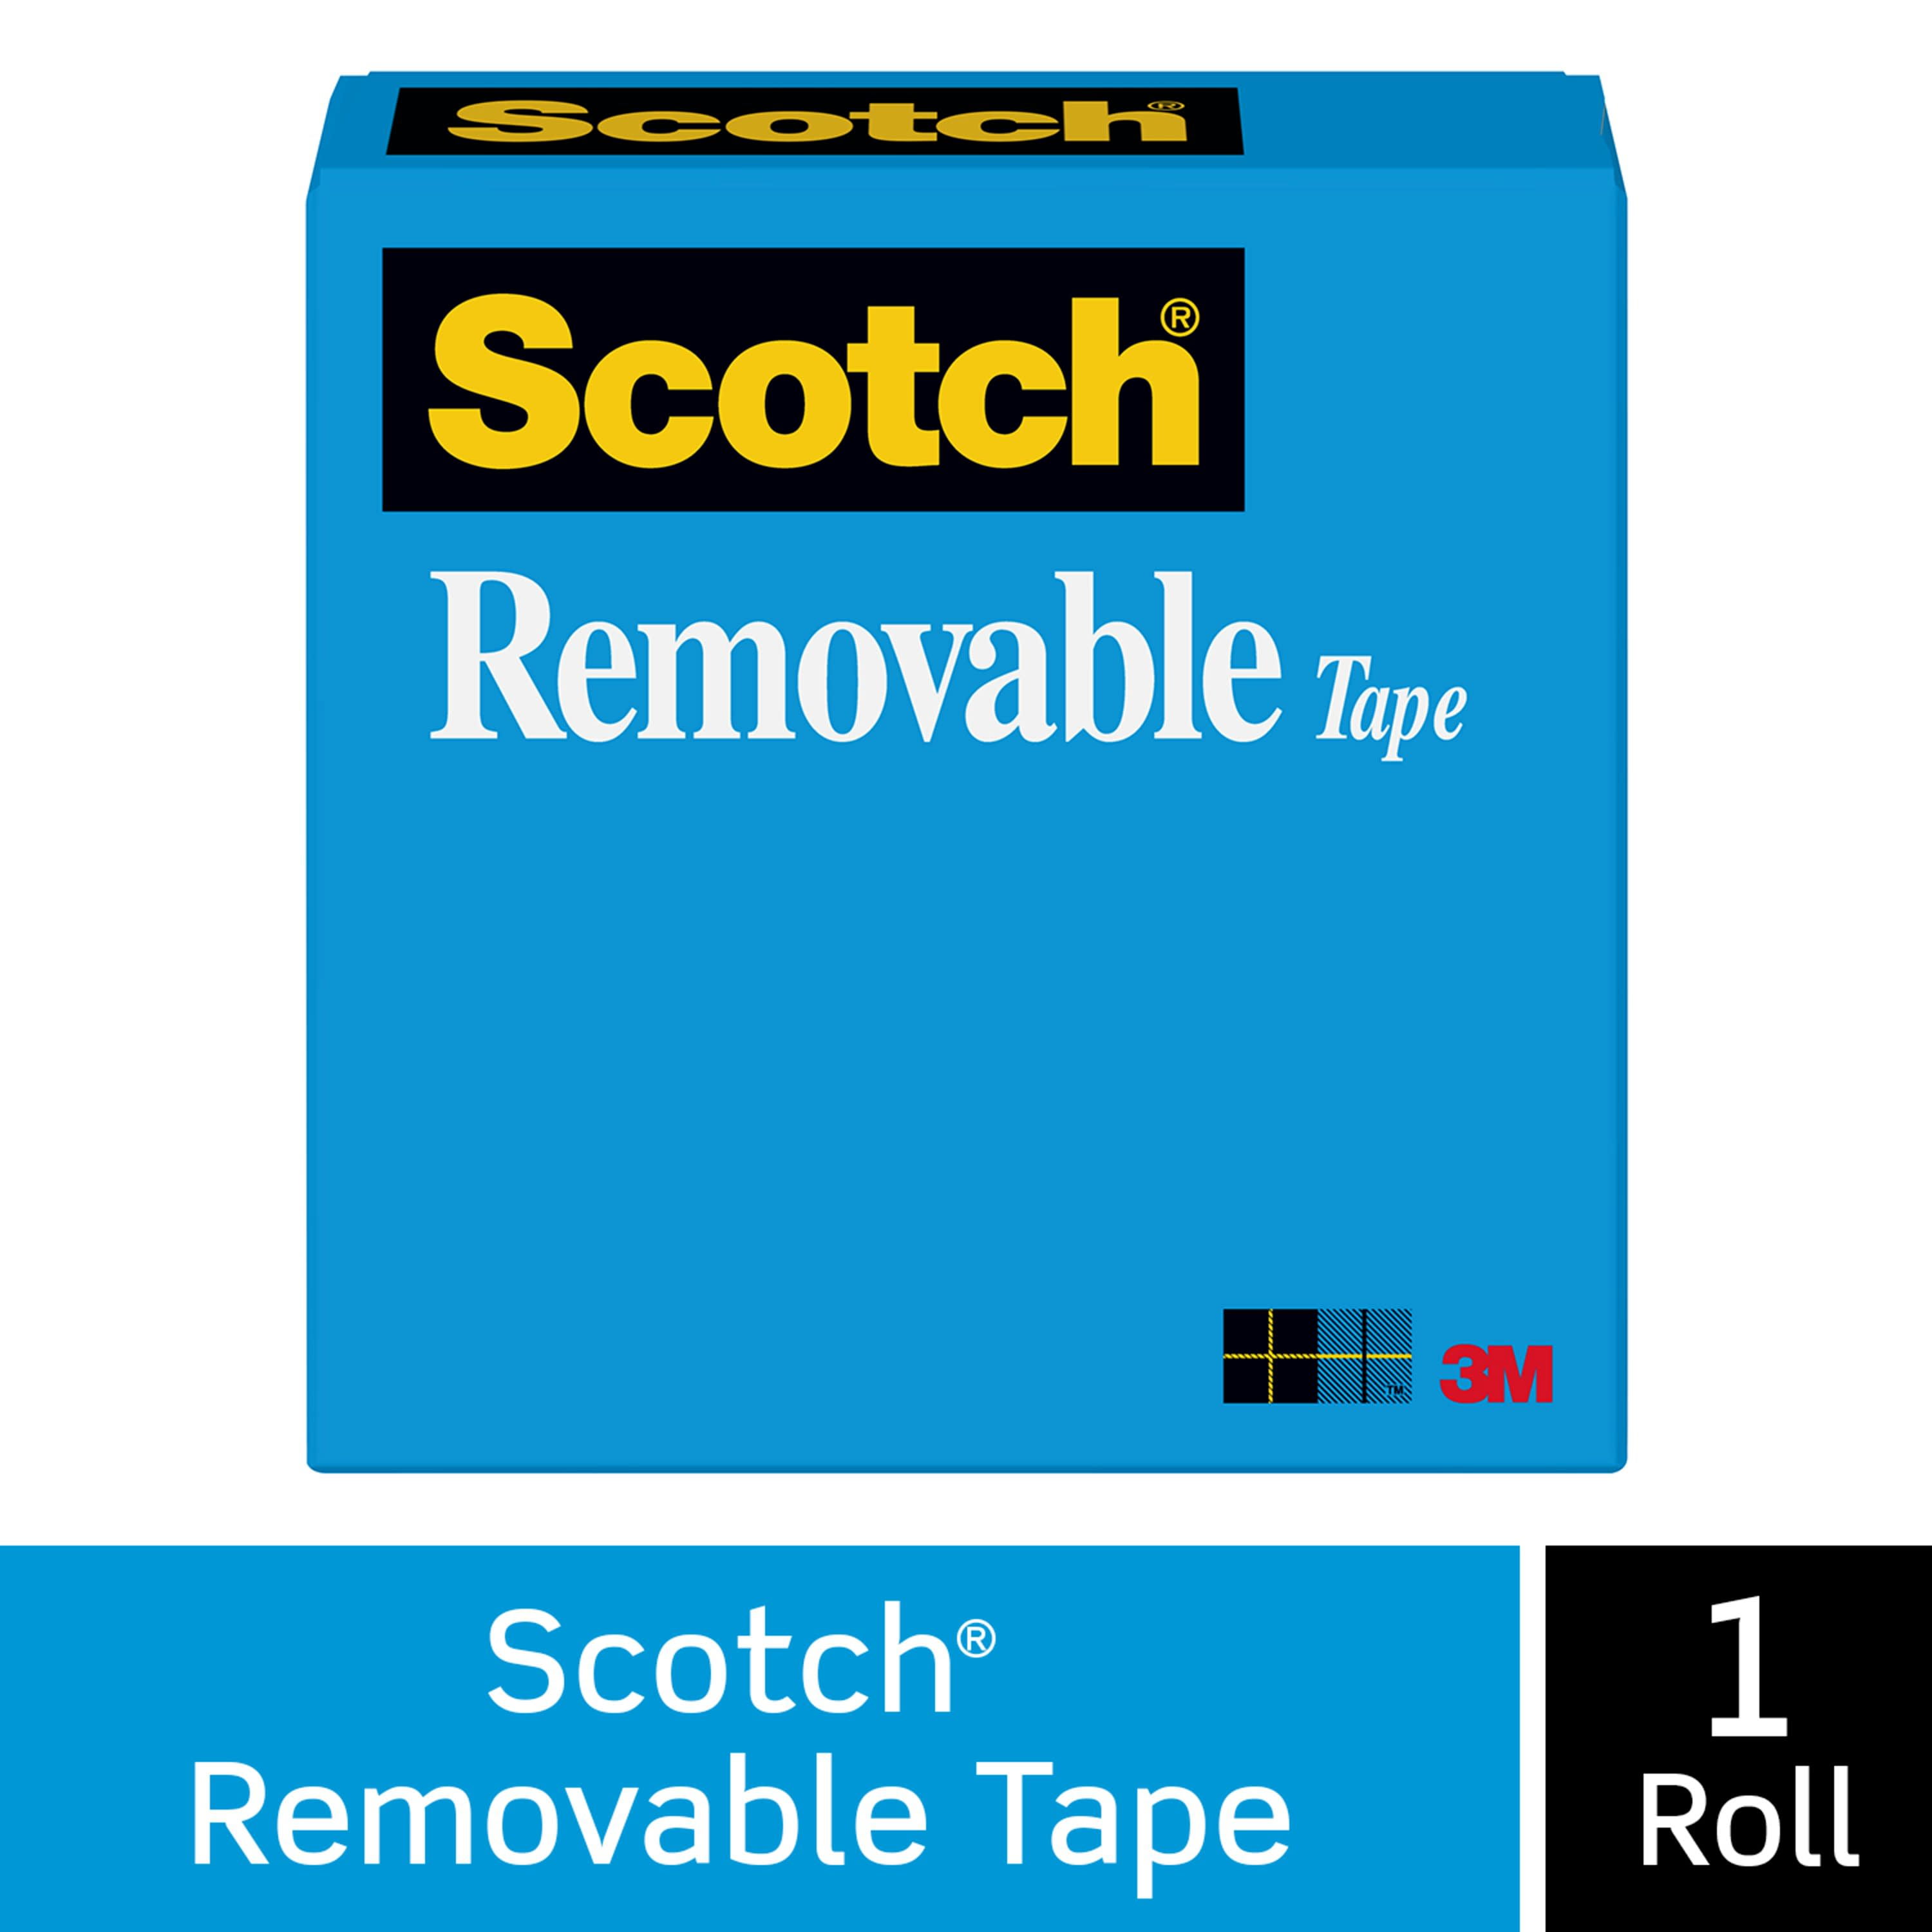 Scotch 002 Scrapbooking Tape 1/2in x 300in